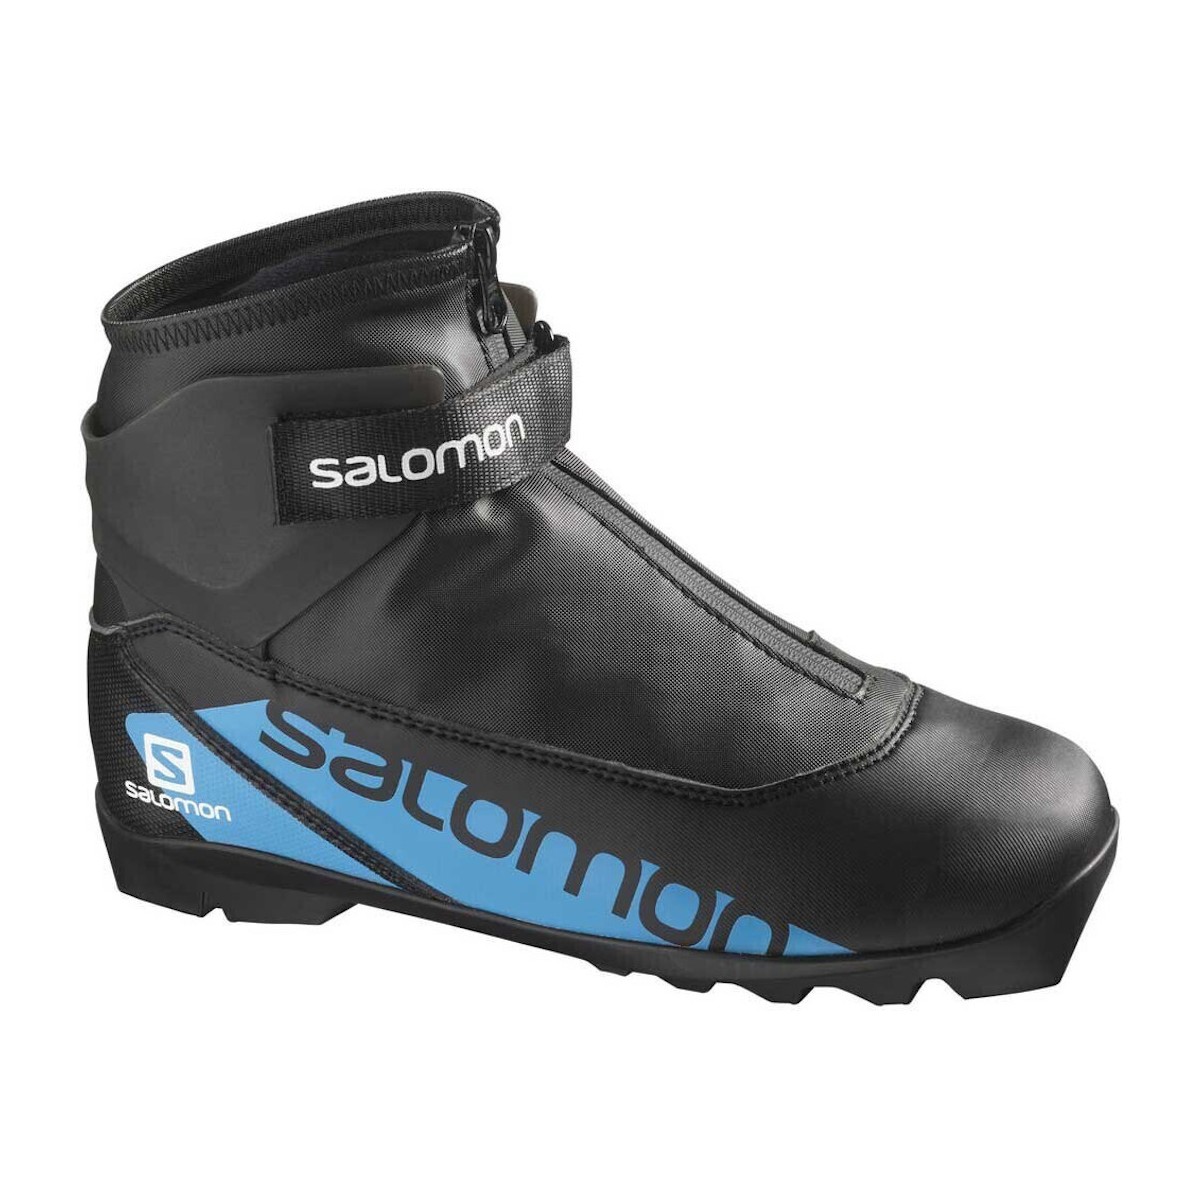 SALOMON R/COMBI JR PL combi nordic boots - black/blue